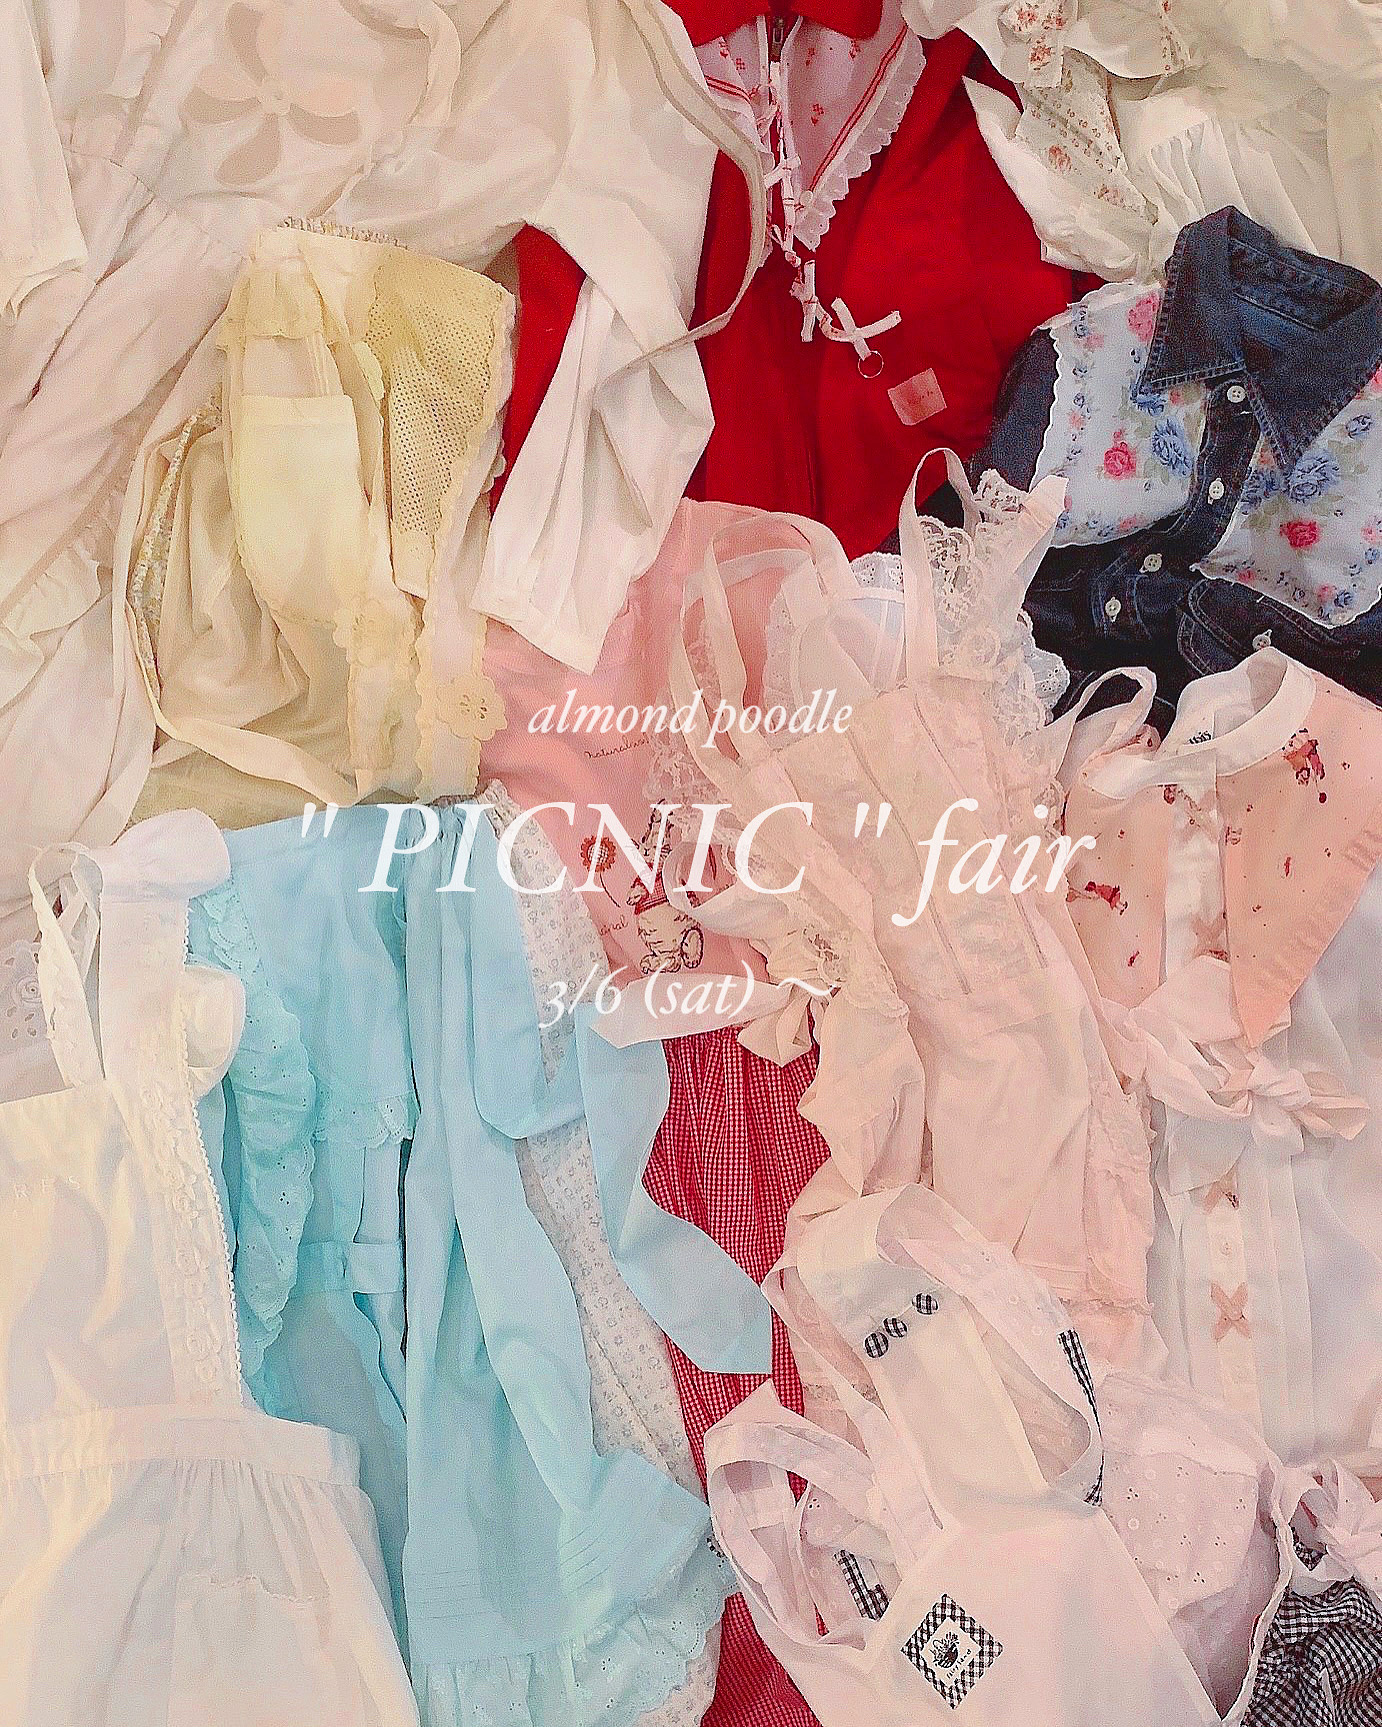 2021ss picnic fair 🥪